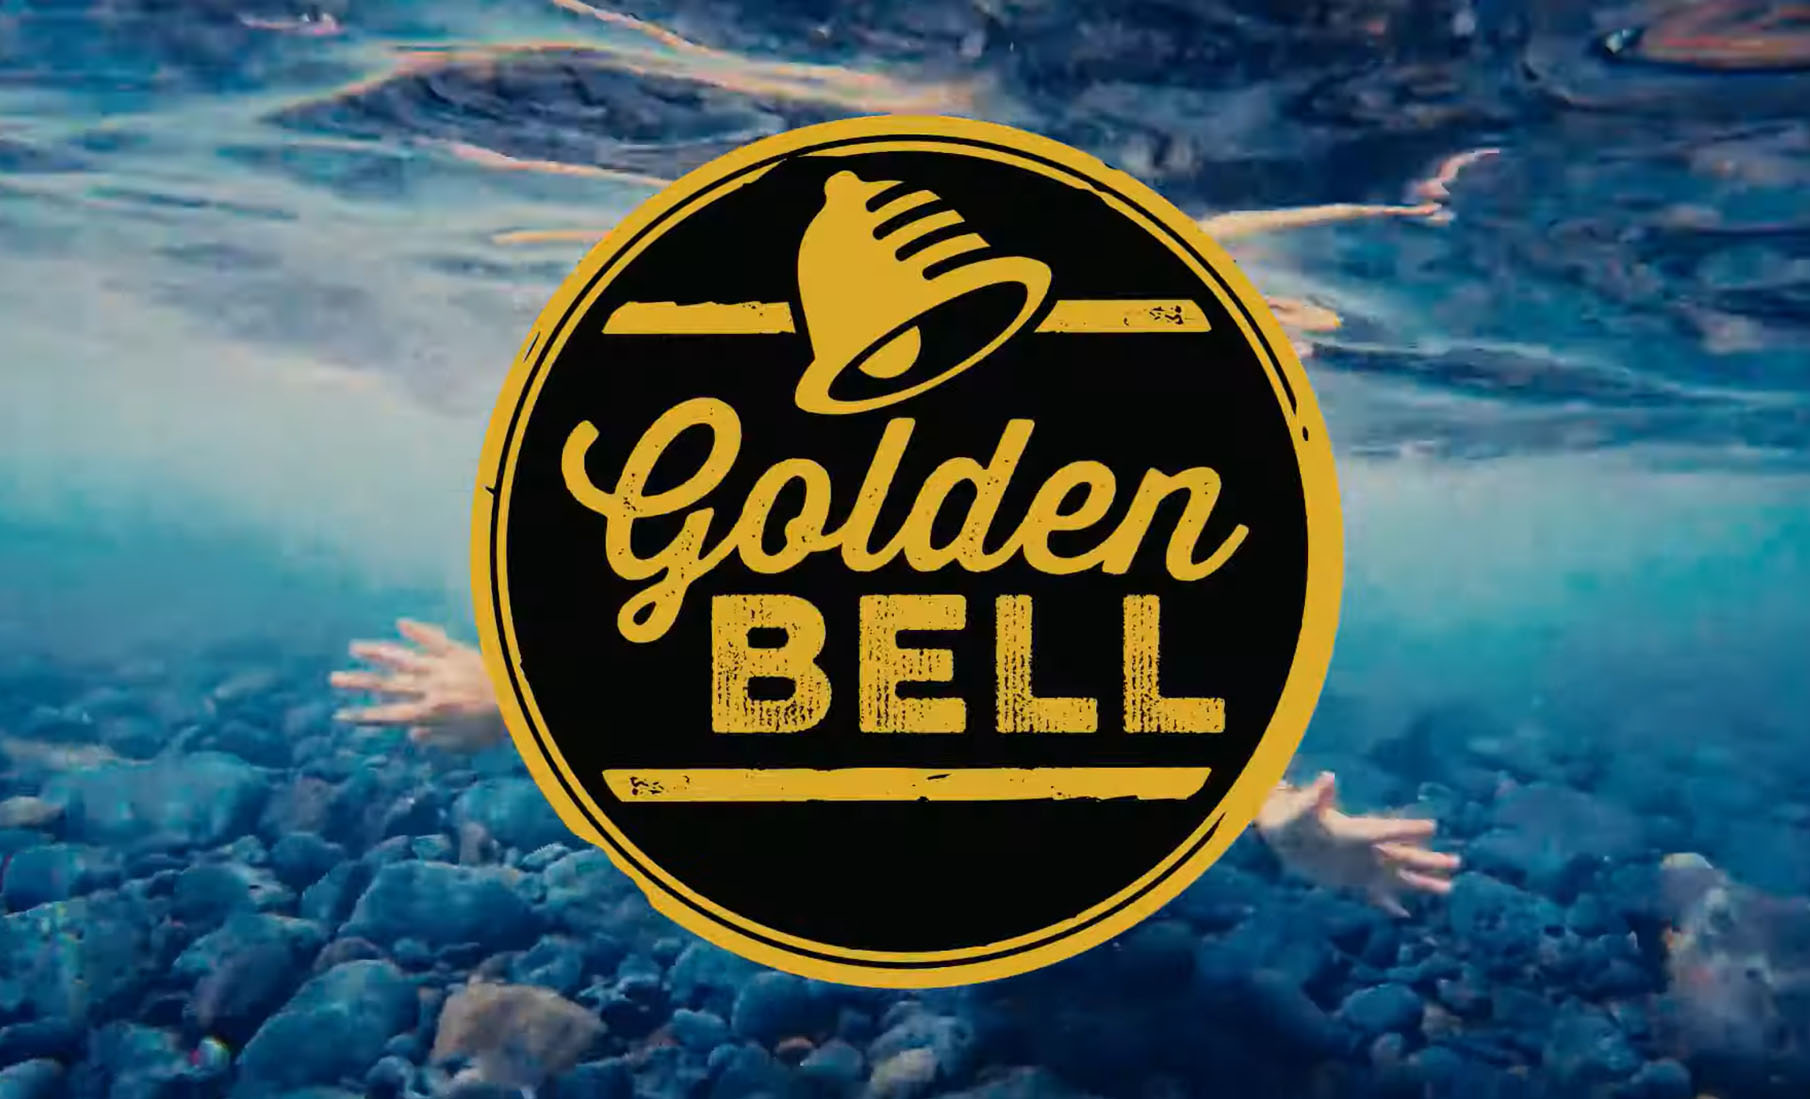 Golden Bell 2022